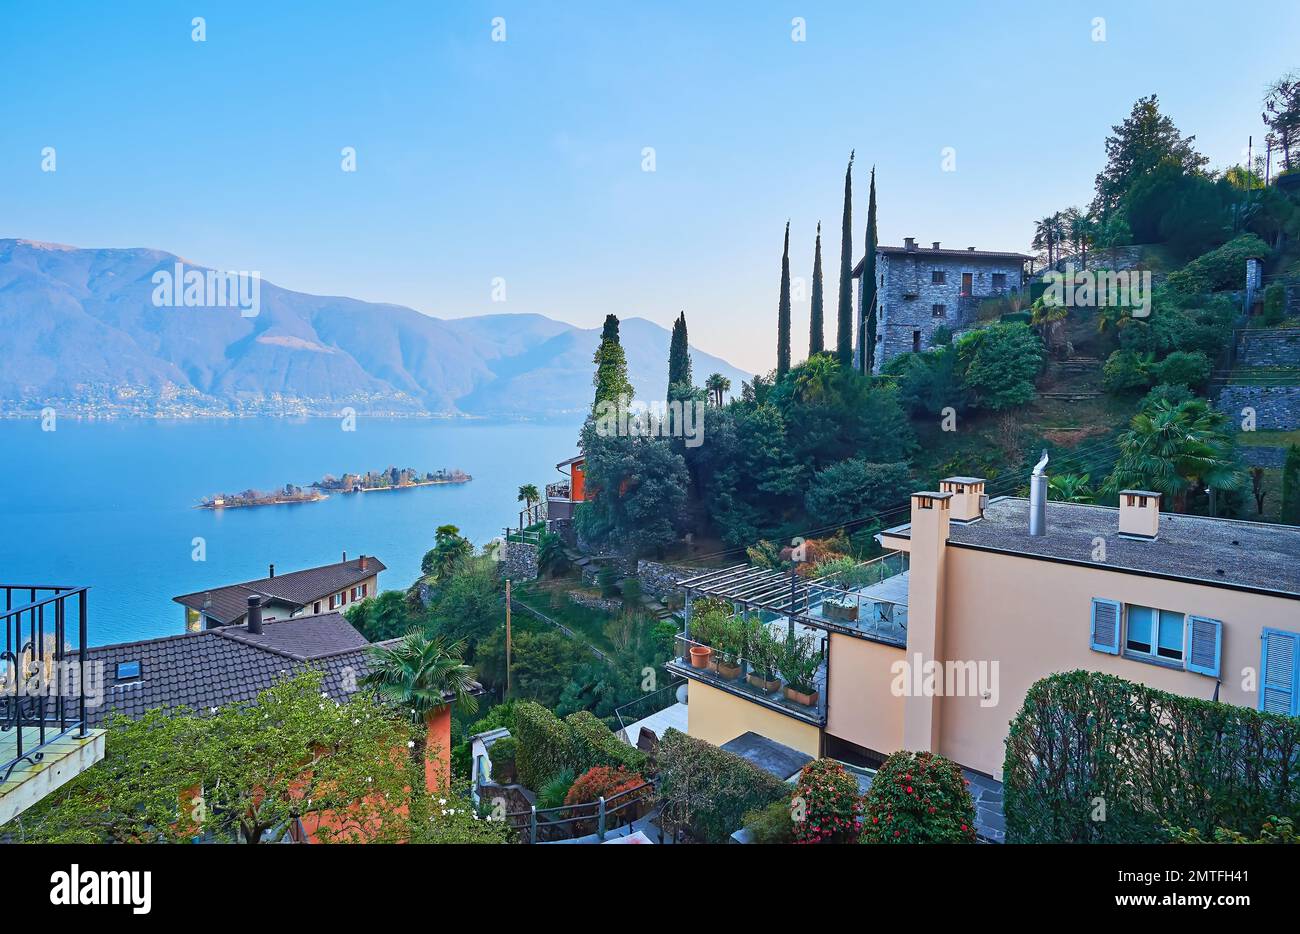 Los jardines de la terraza floreciente en la ladera de la montaña contra las aguas azules del lago Maggiore, las islas Brissago y los Alpes brumosos, Ronco sopra Ascona, Suizla Foto de stock